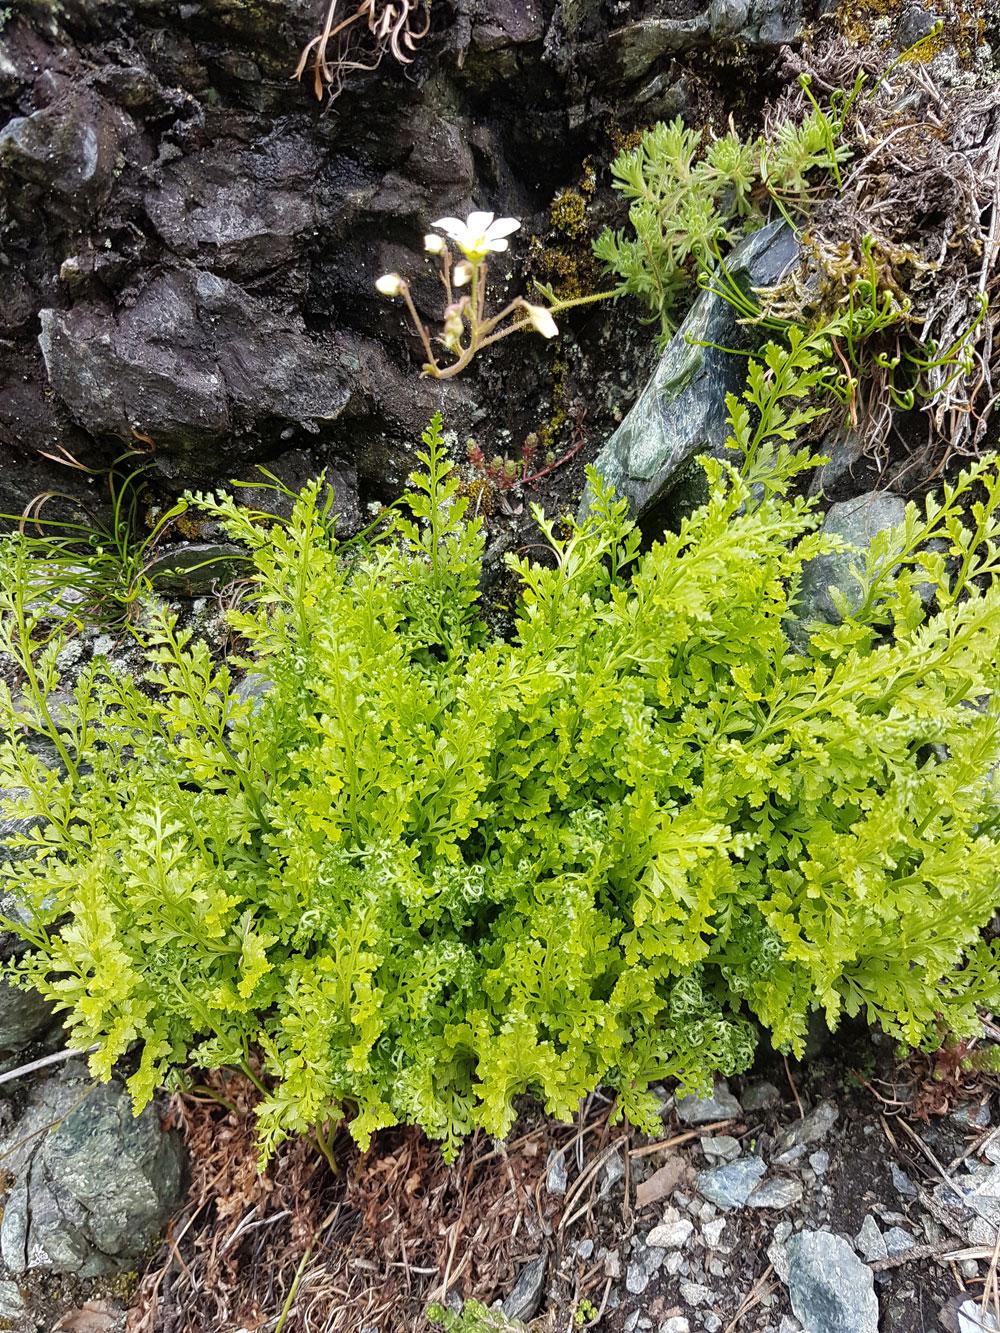 Zu sehen ist ein prachtvolles, leuchtend grünes Exemplar des Serpentin-Streifenfarns (Asplenium cuneifolium) an einem Felsfuß. Der Farn wächst buschig mit gefiederten Wedeln und feinen, breit ovalen, stumpf gezähnten Fiederchen. In der Felswand etwas oberhalb wächst ein blühender Rasen-Steinbrech (Saxifraga rosacea). Die Blüten sind weiß und kelchförmig und stehen am Ende eines längeren Stiels.